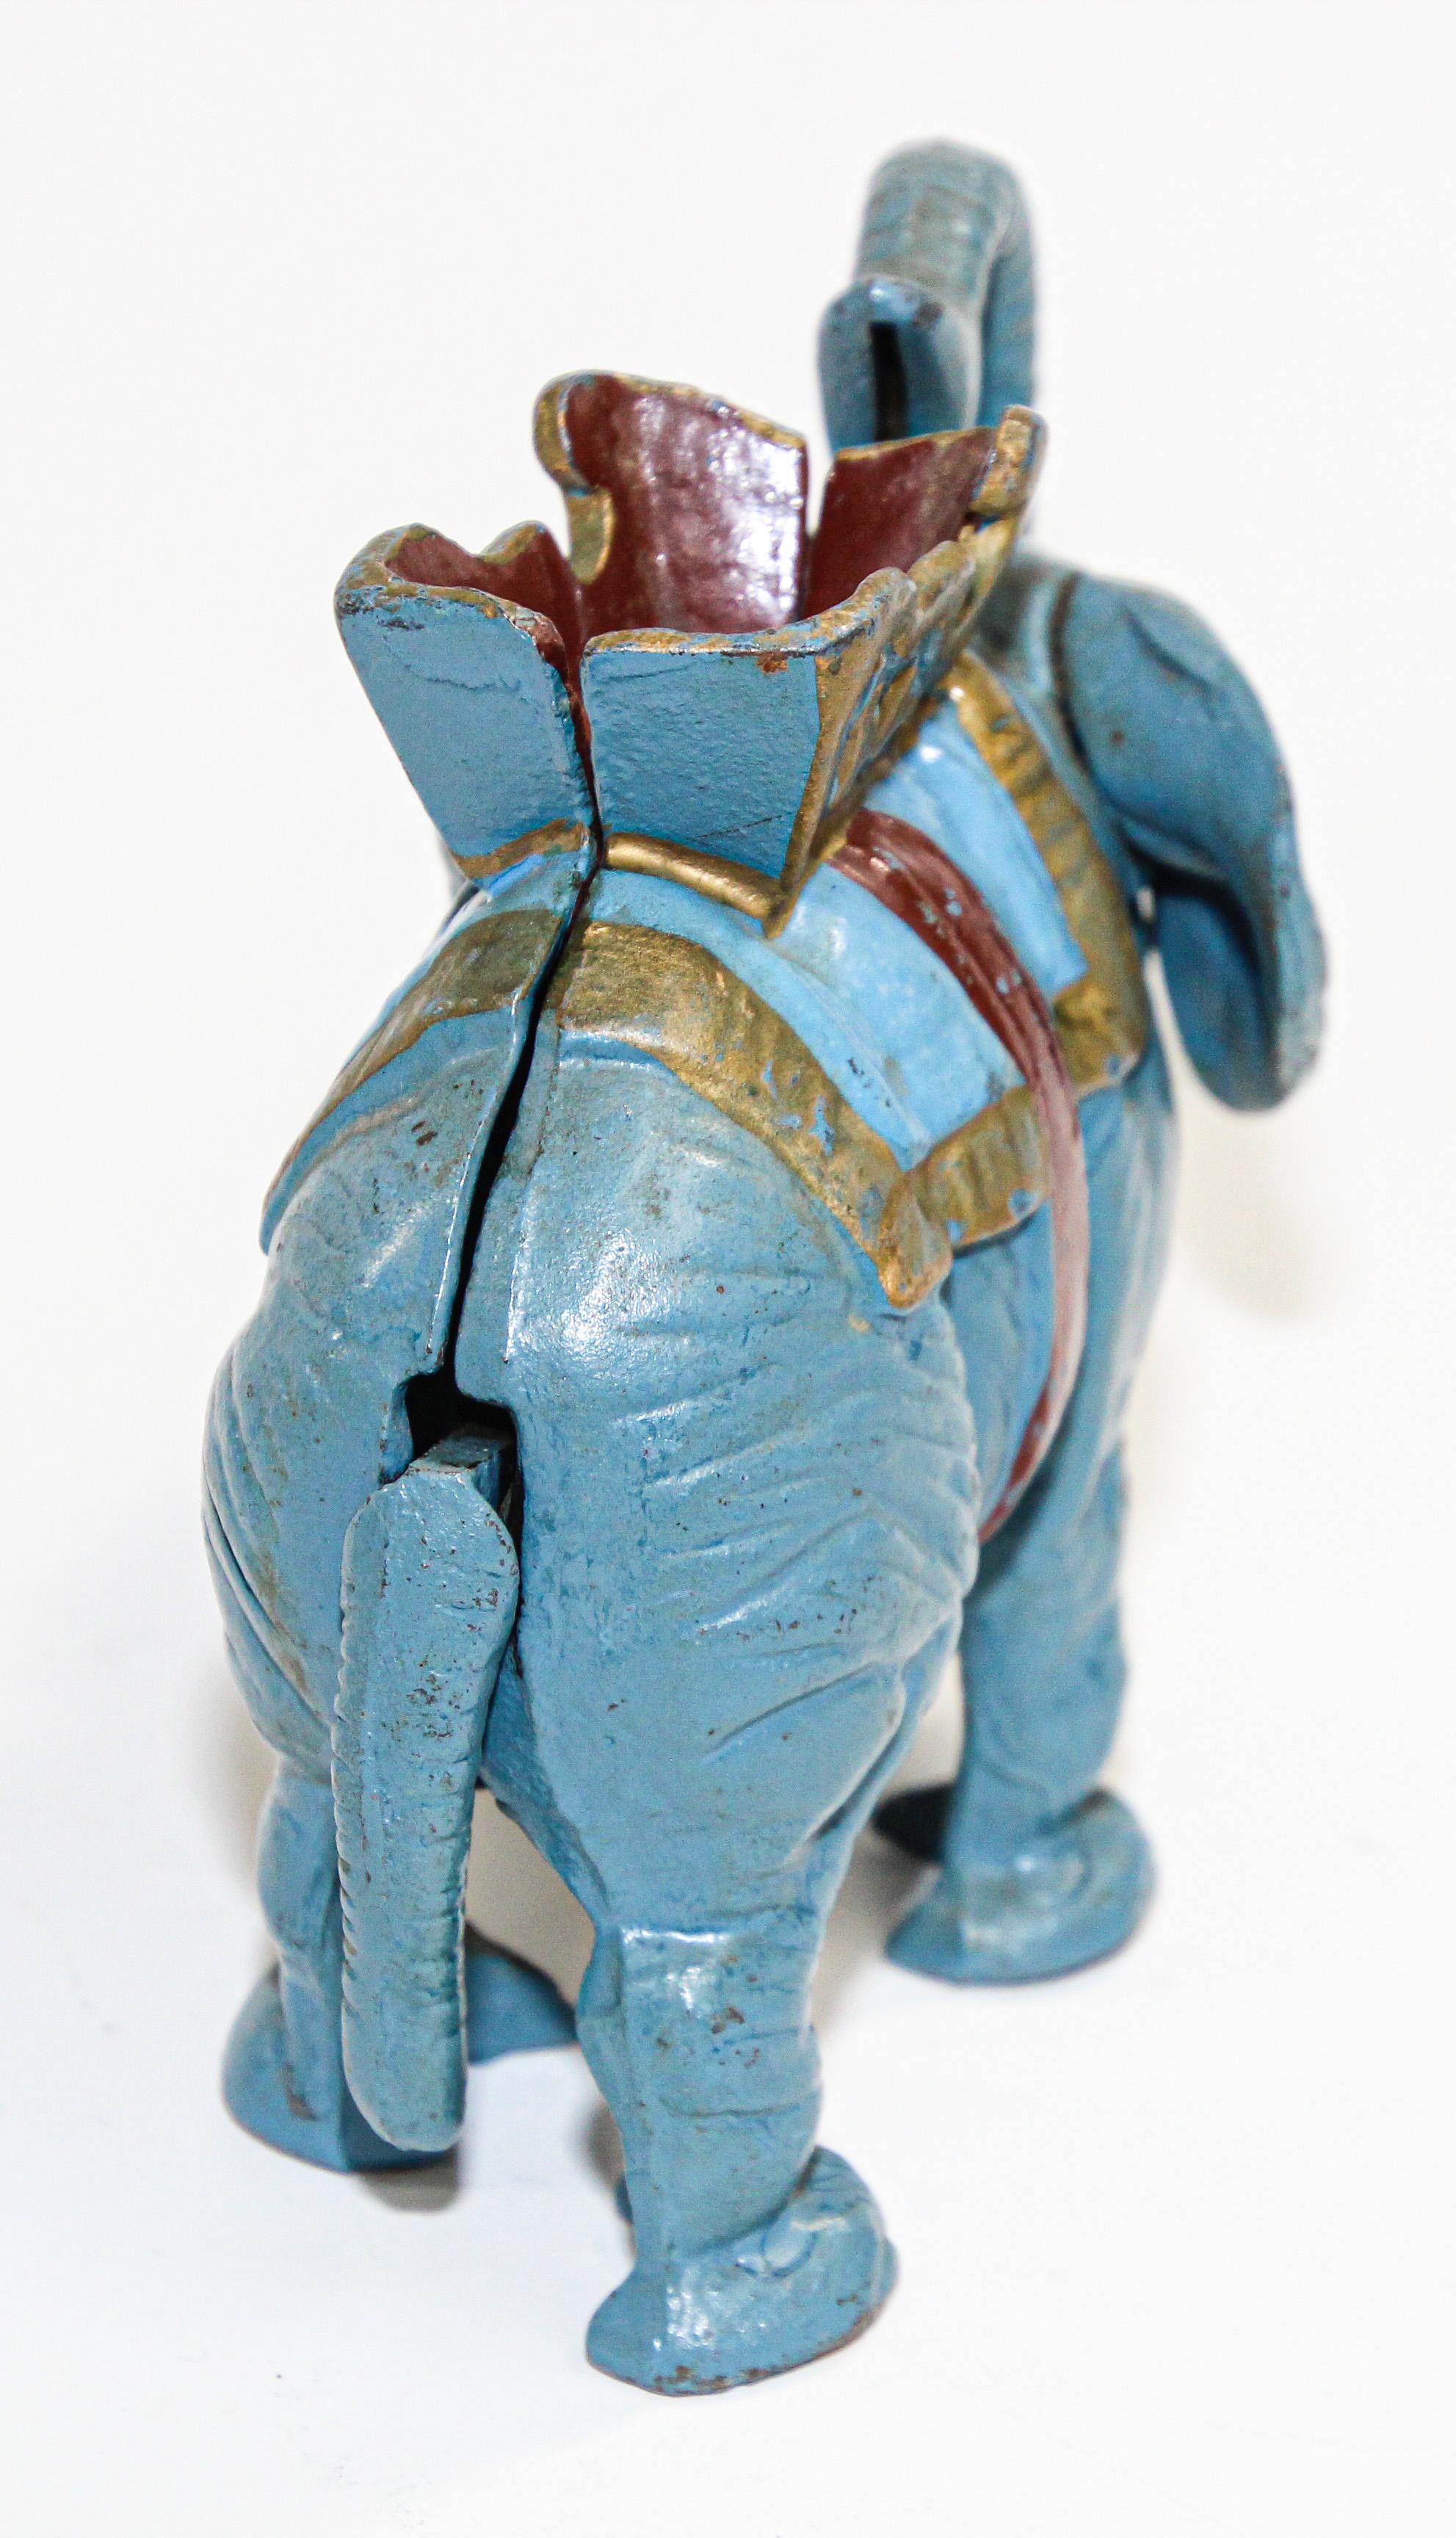 mechanical elephant toy